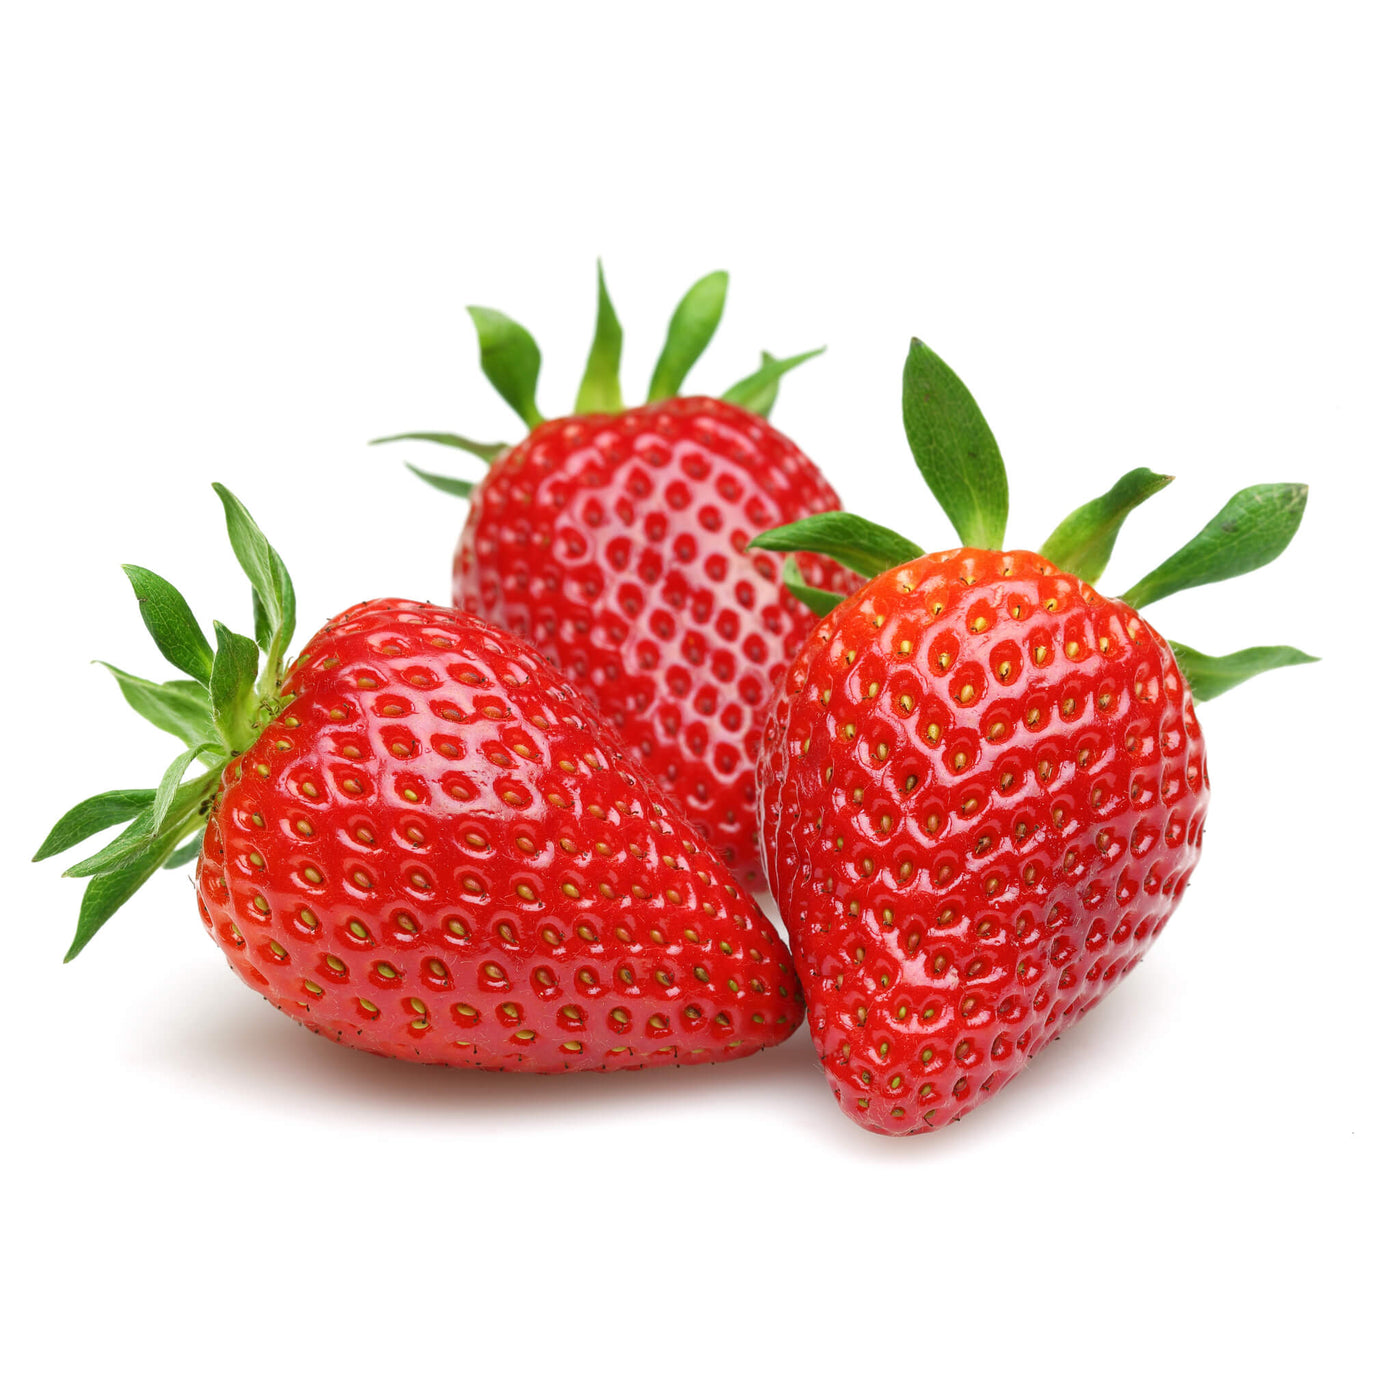 Erdbeeren, Aquaponik, Hochbeet oder Garten